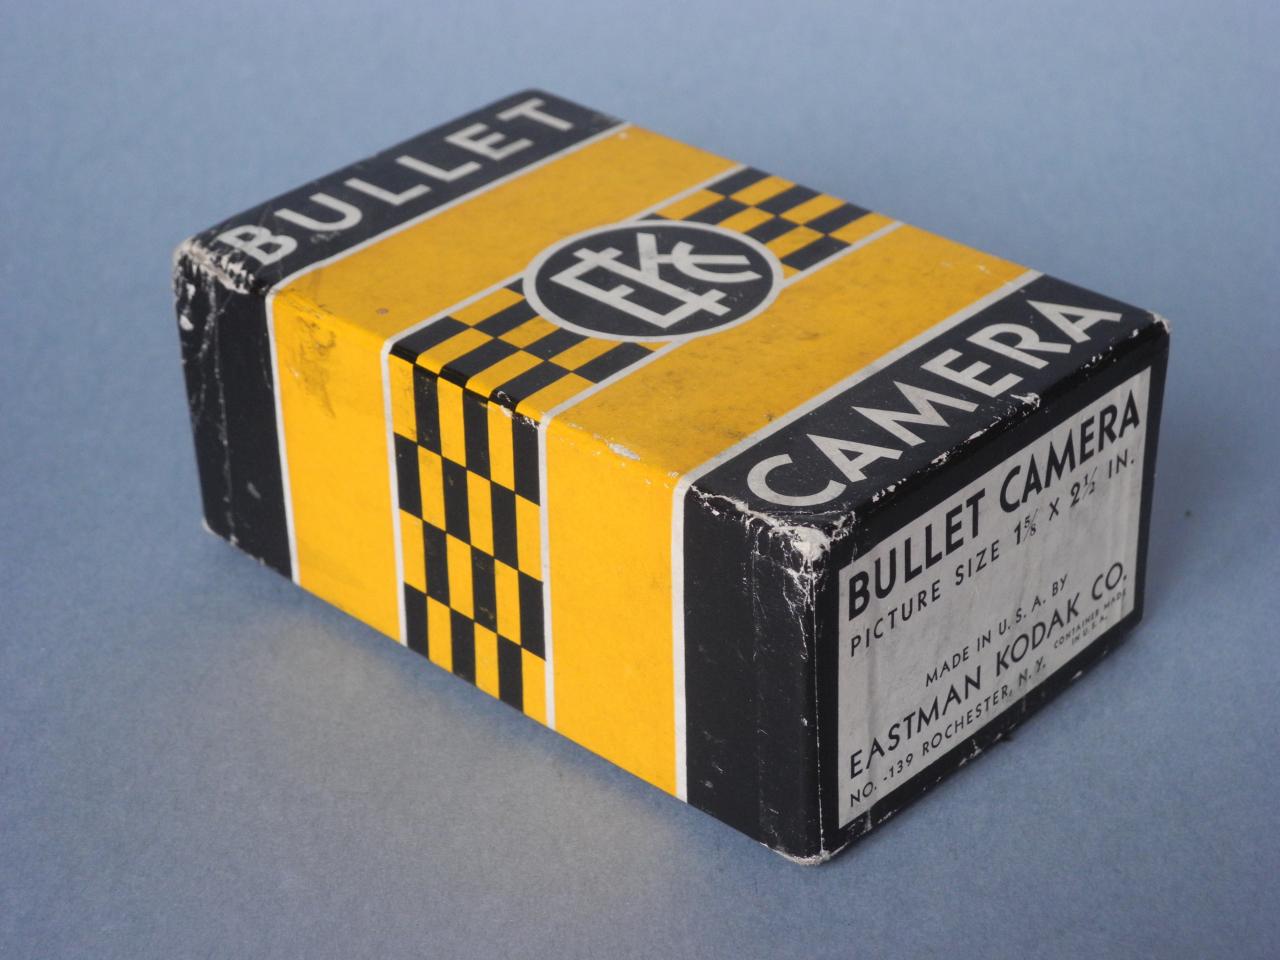 *Boite Bullet-camera Kodak*